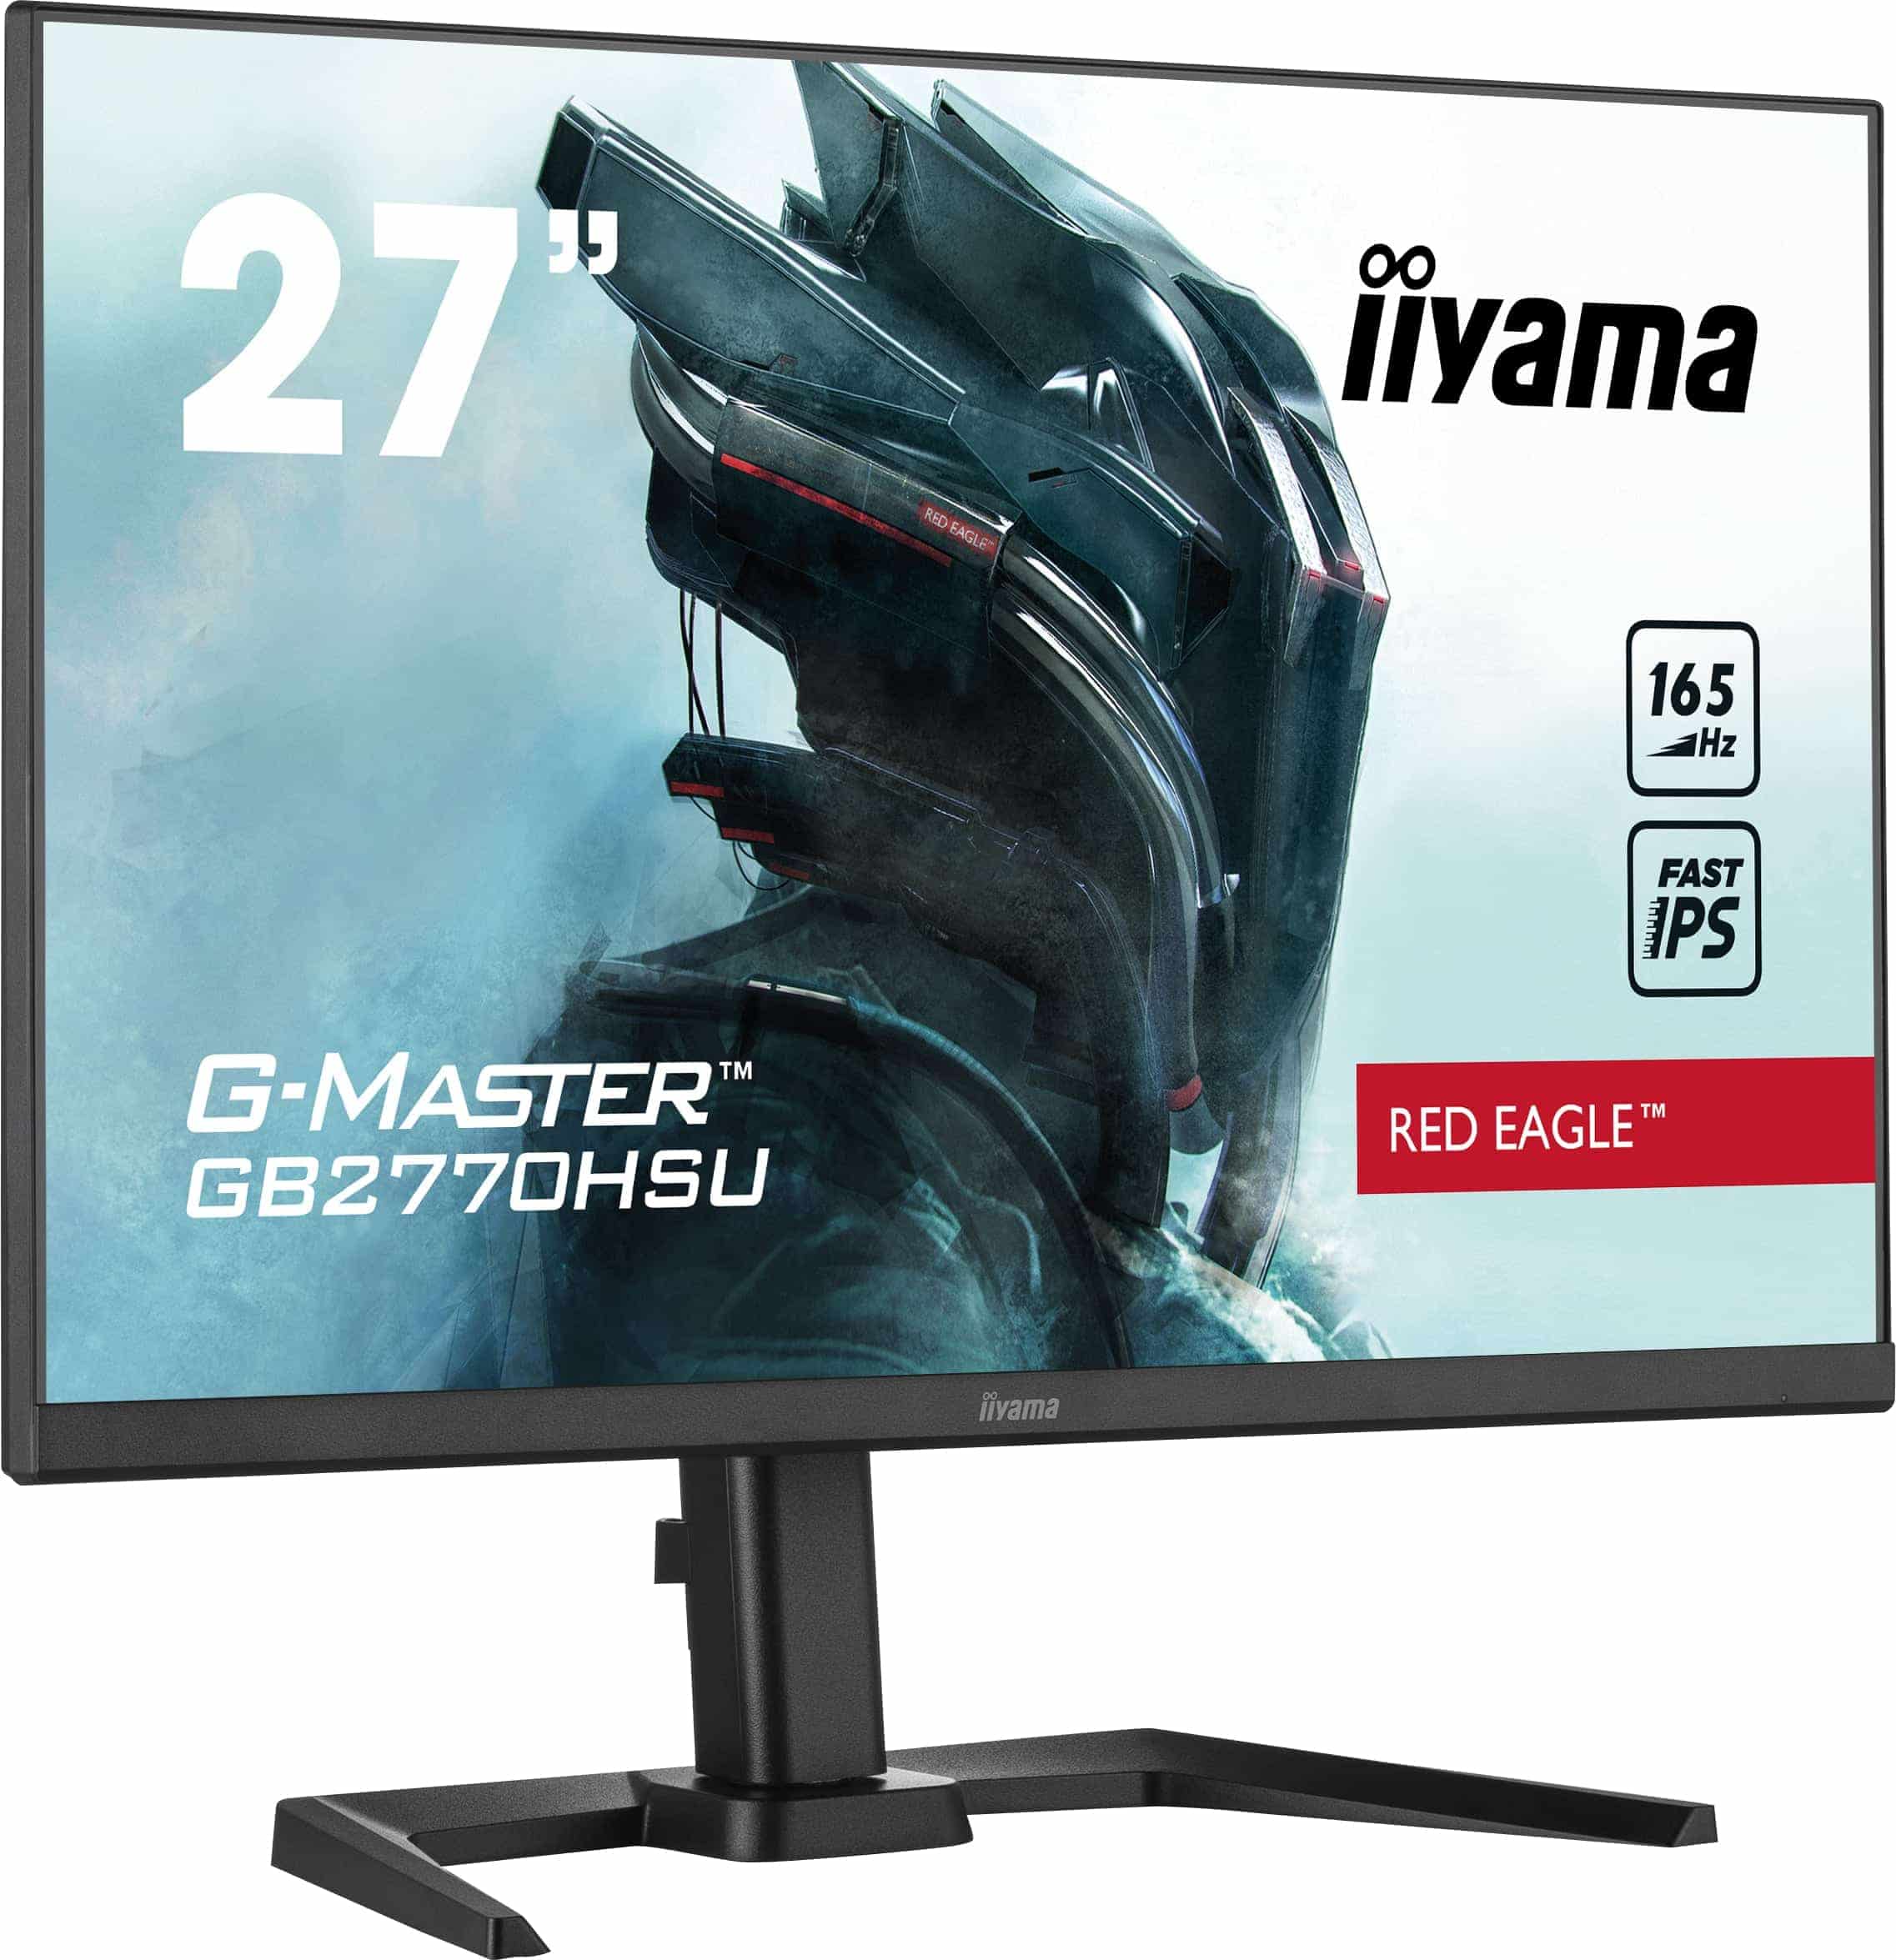 Iiyama G-MASTER GB2770HSU-B5 | 27" | 165Hz | Full HD | DisplayPort | Gaming Monitor